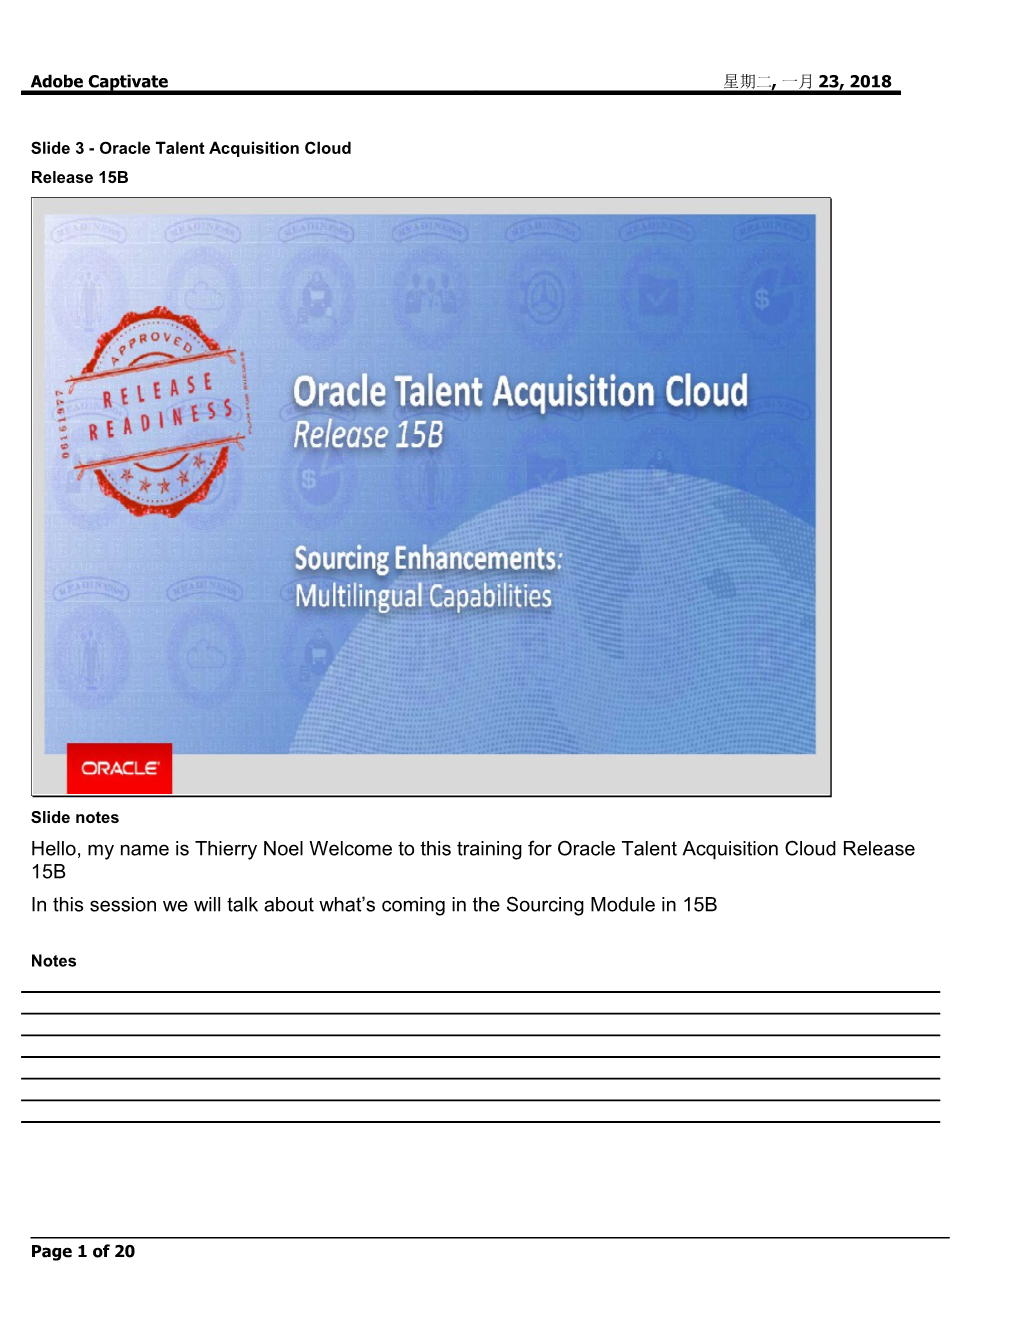 Slide 3 - Oracle Talent Acquisition Cloud